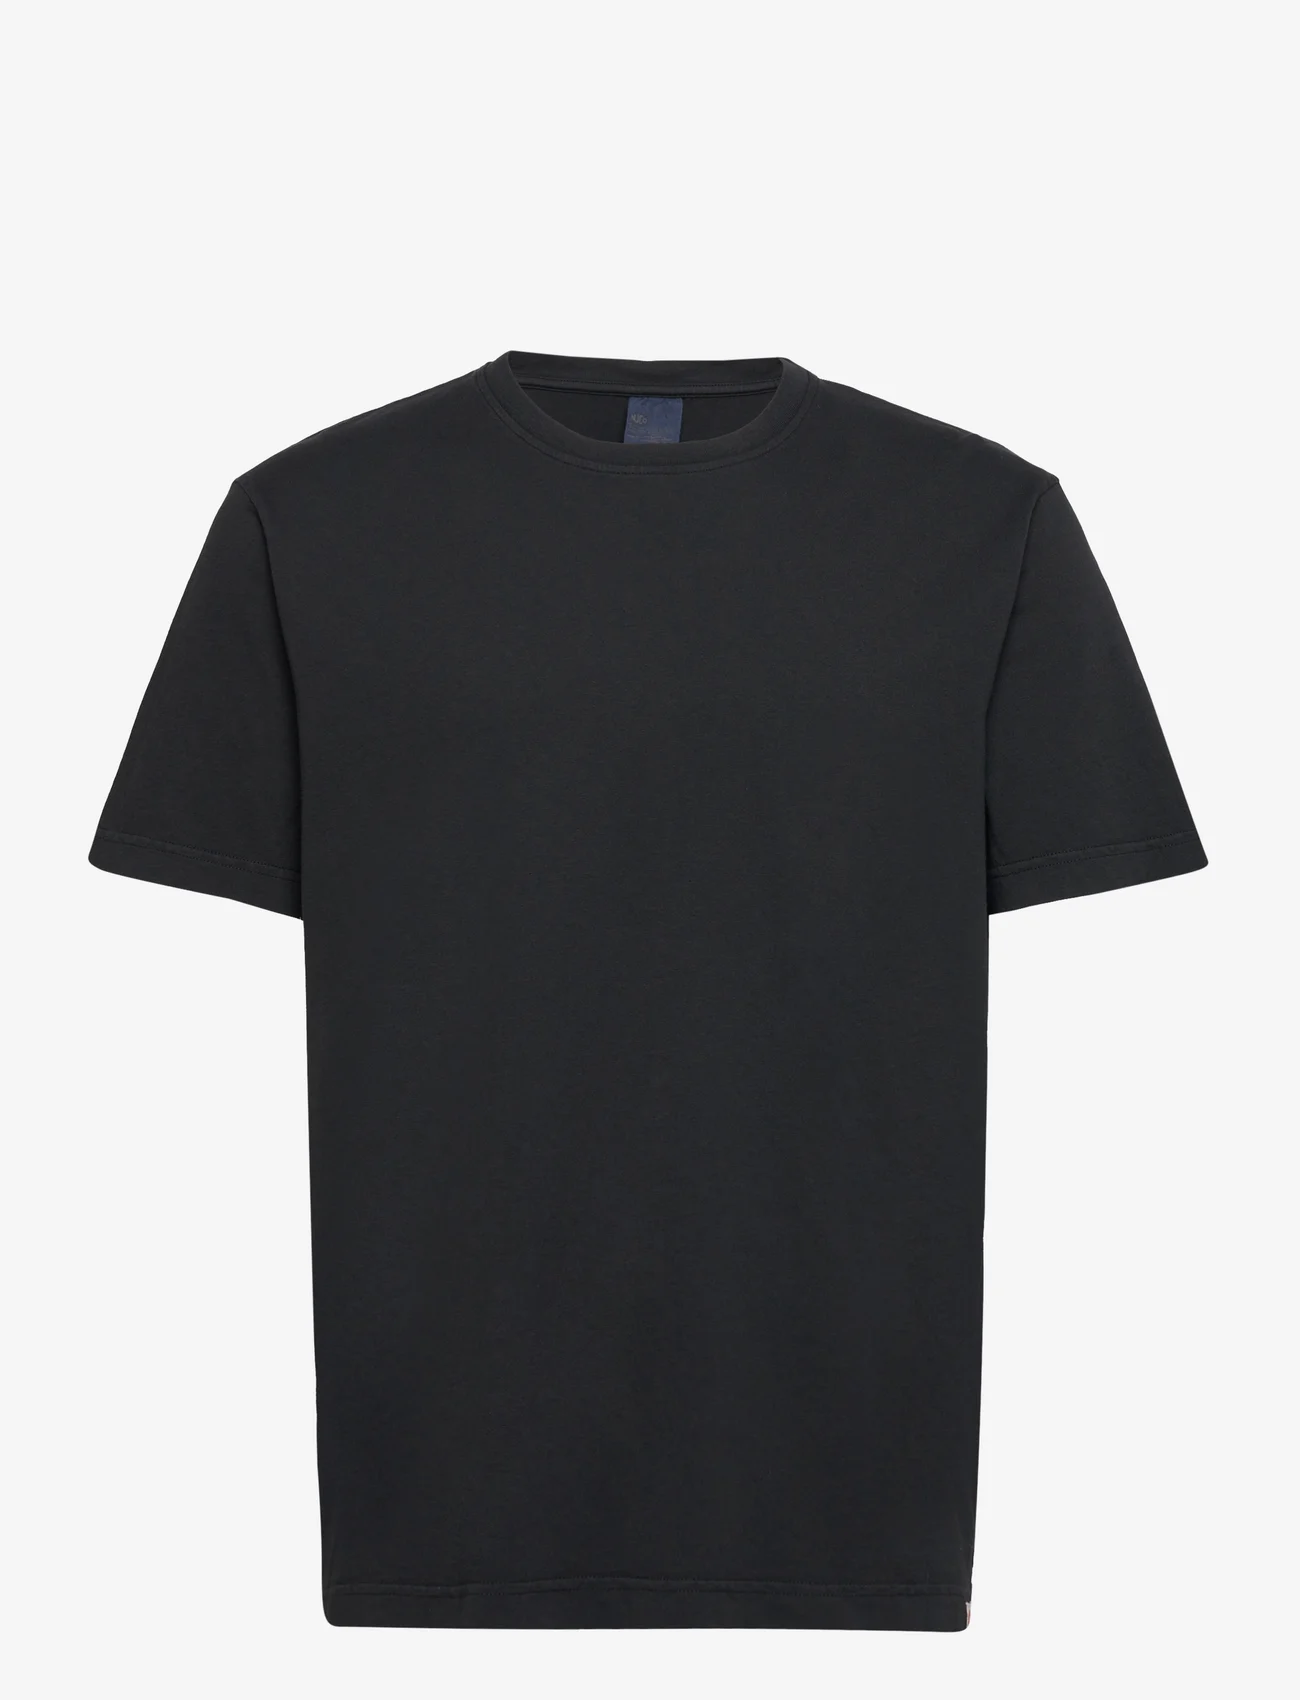 Nudie Jeans - Uno Everyday Tee Black - kortærmede t-shirts - black - 1